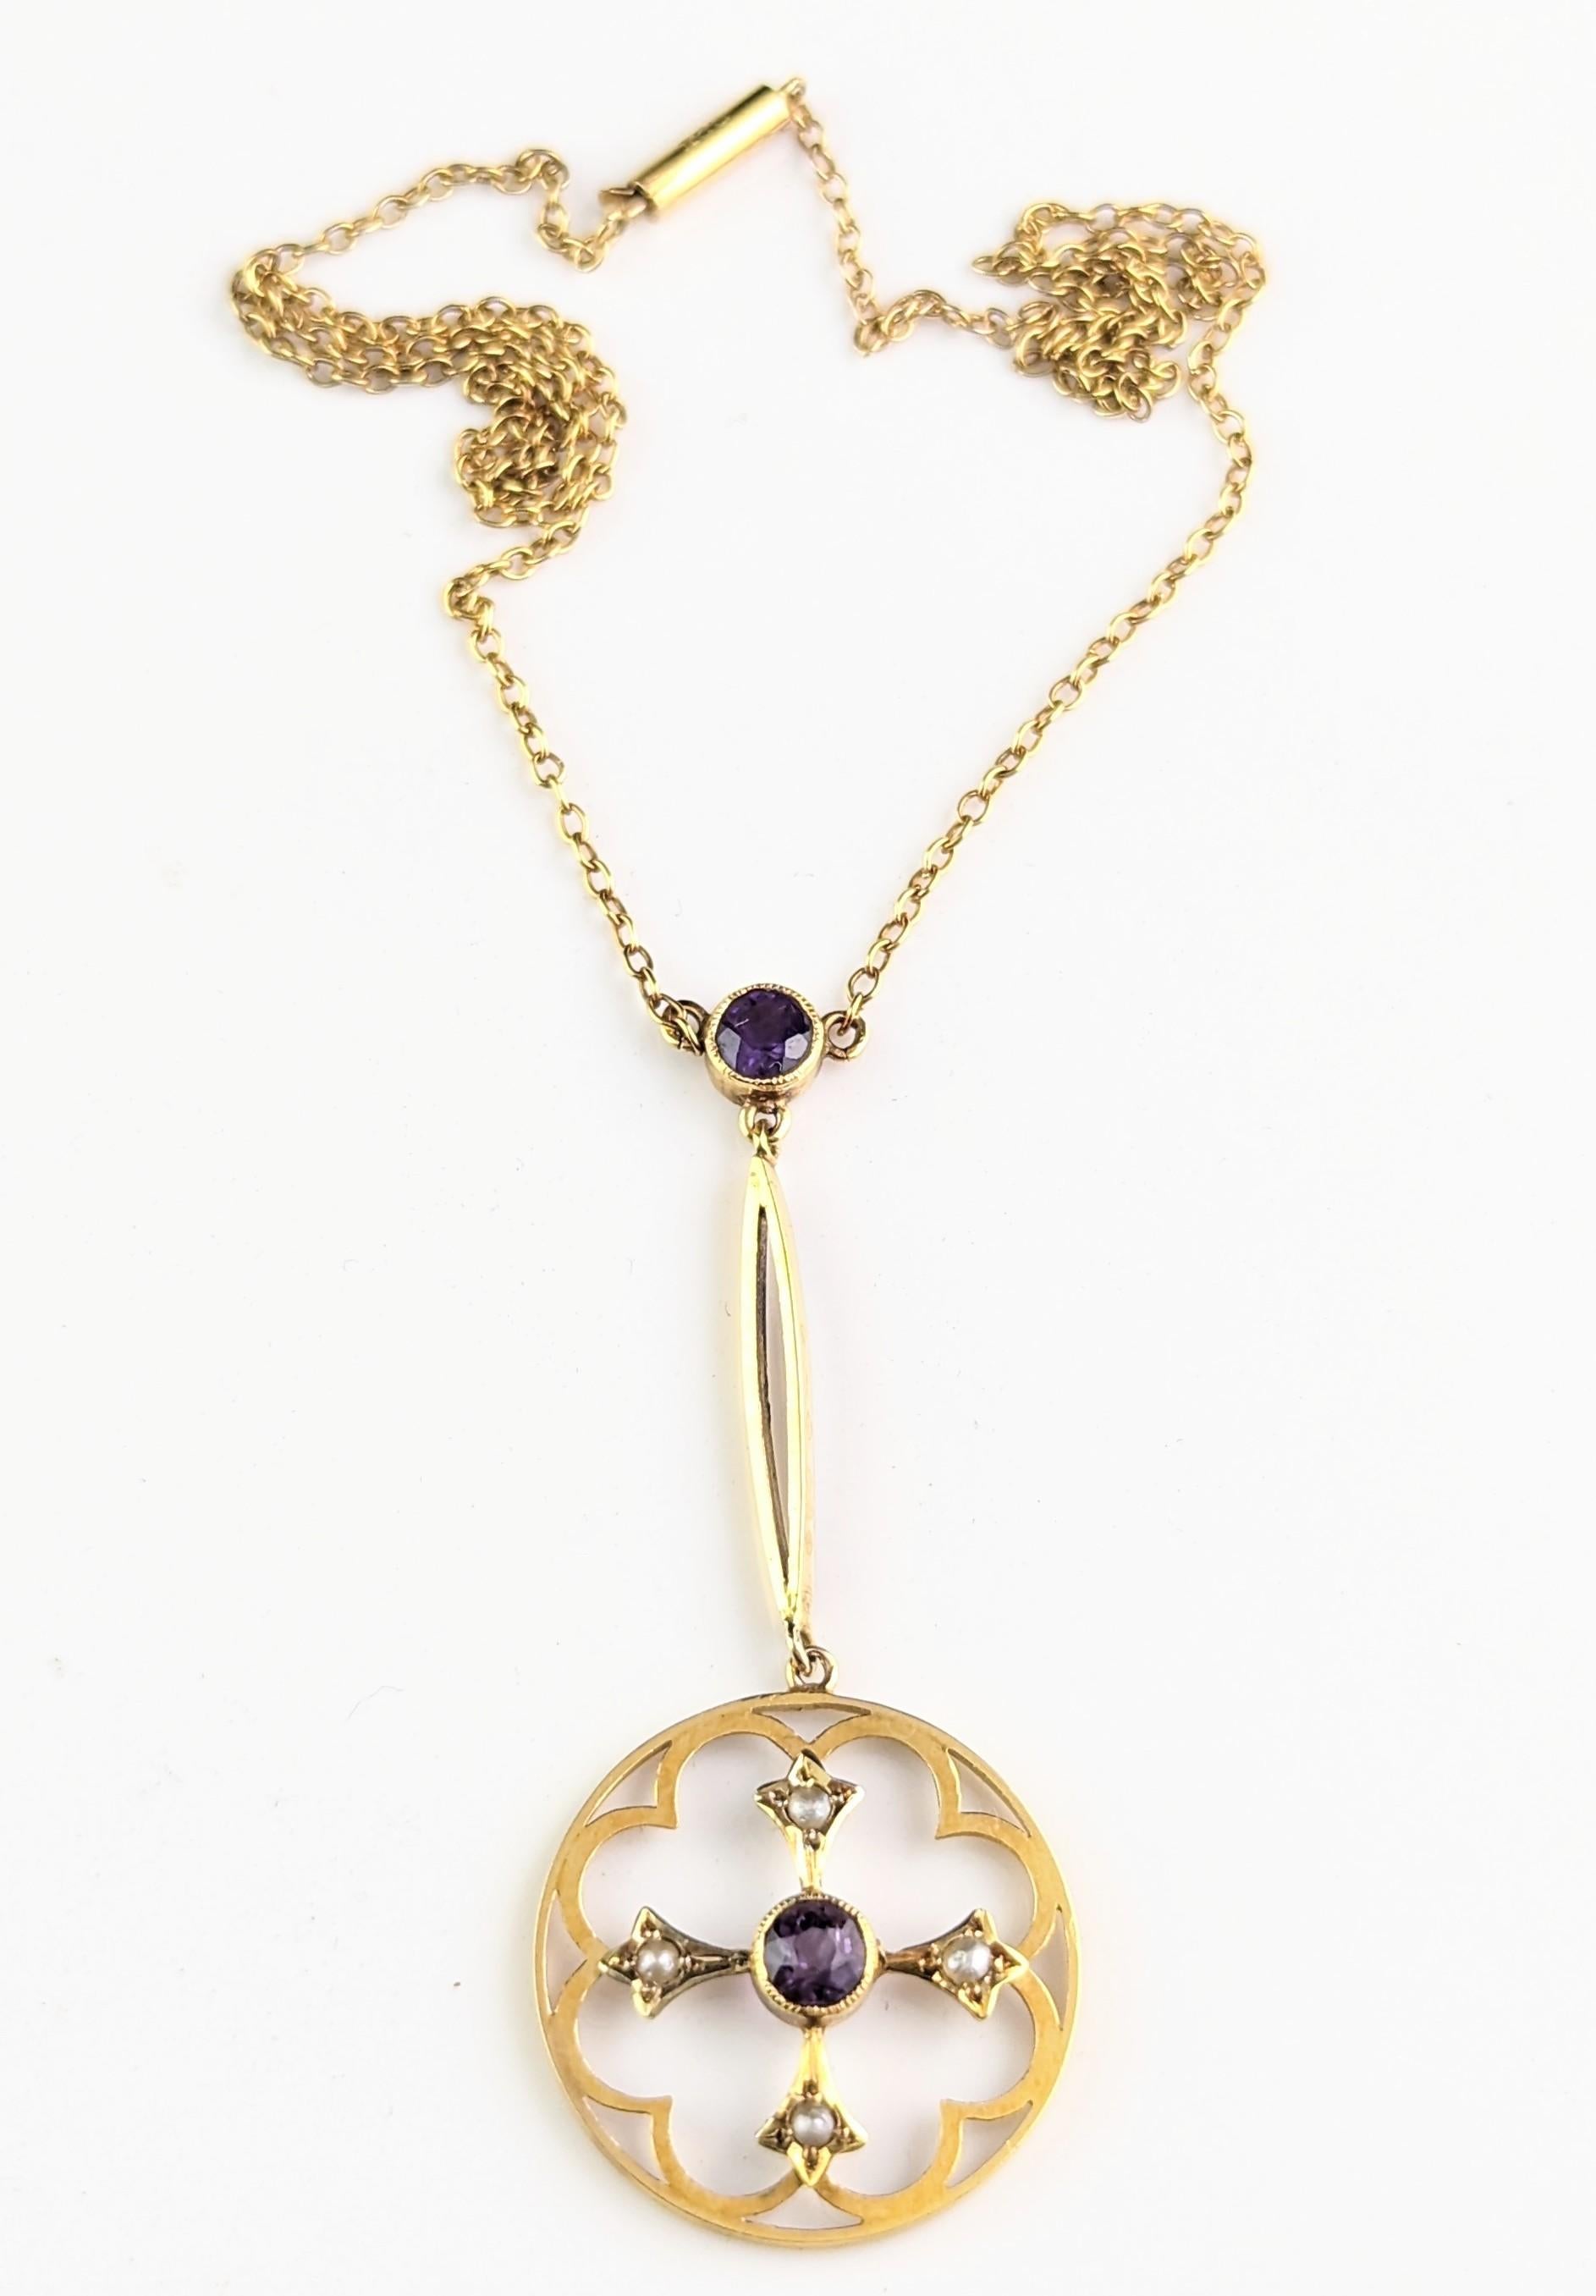 Antique Art Nouveau Pendant Necklace, Amethyst and Pearl, 9 Karat Gold  For Sale 8